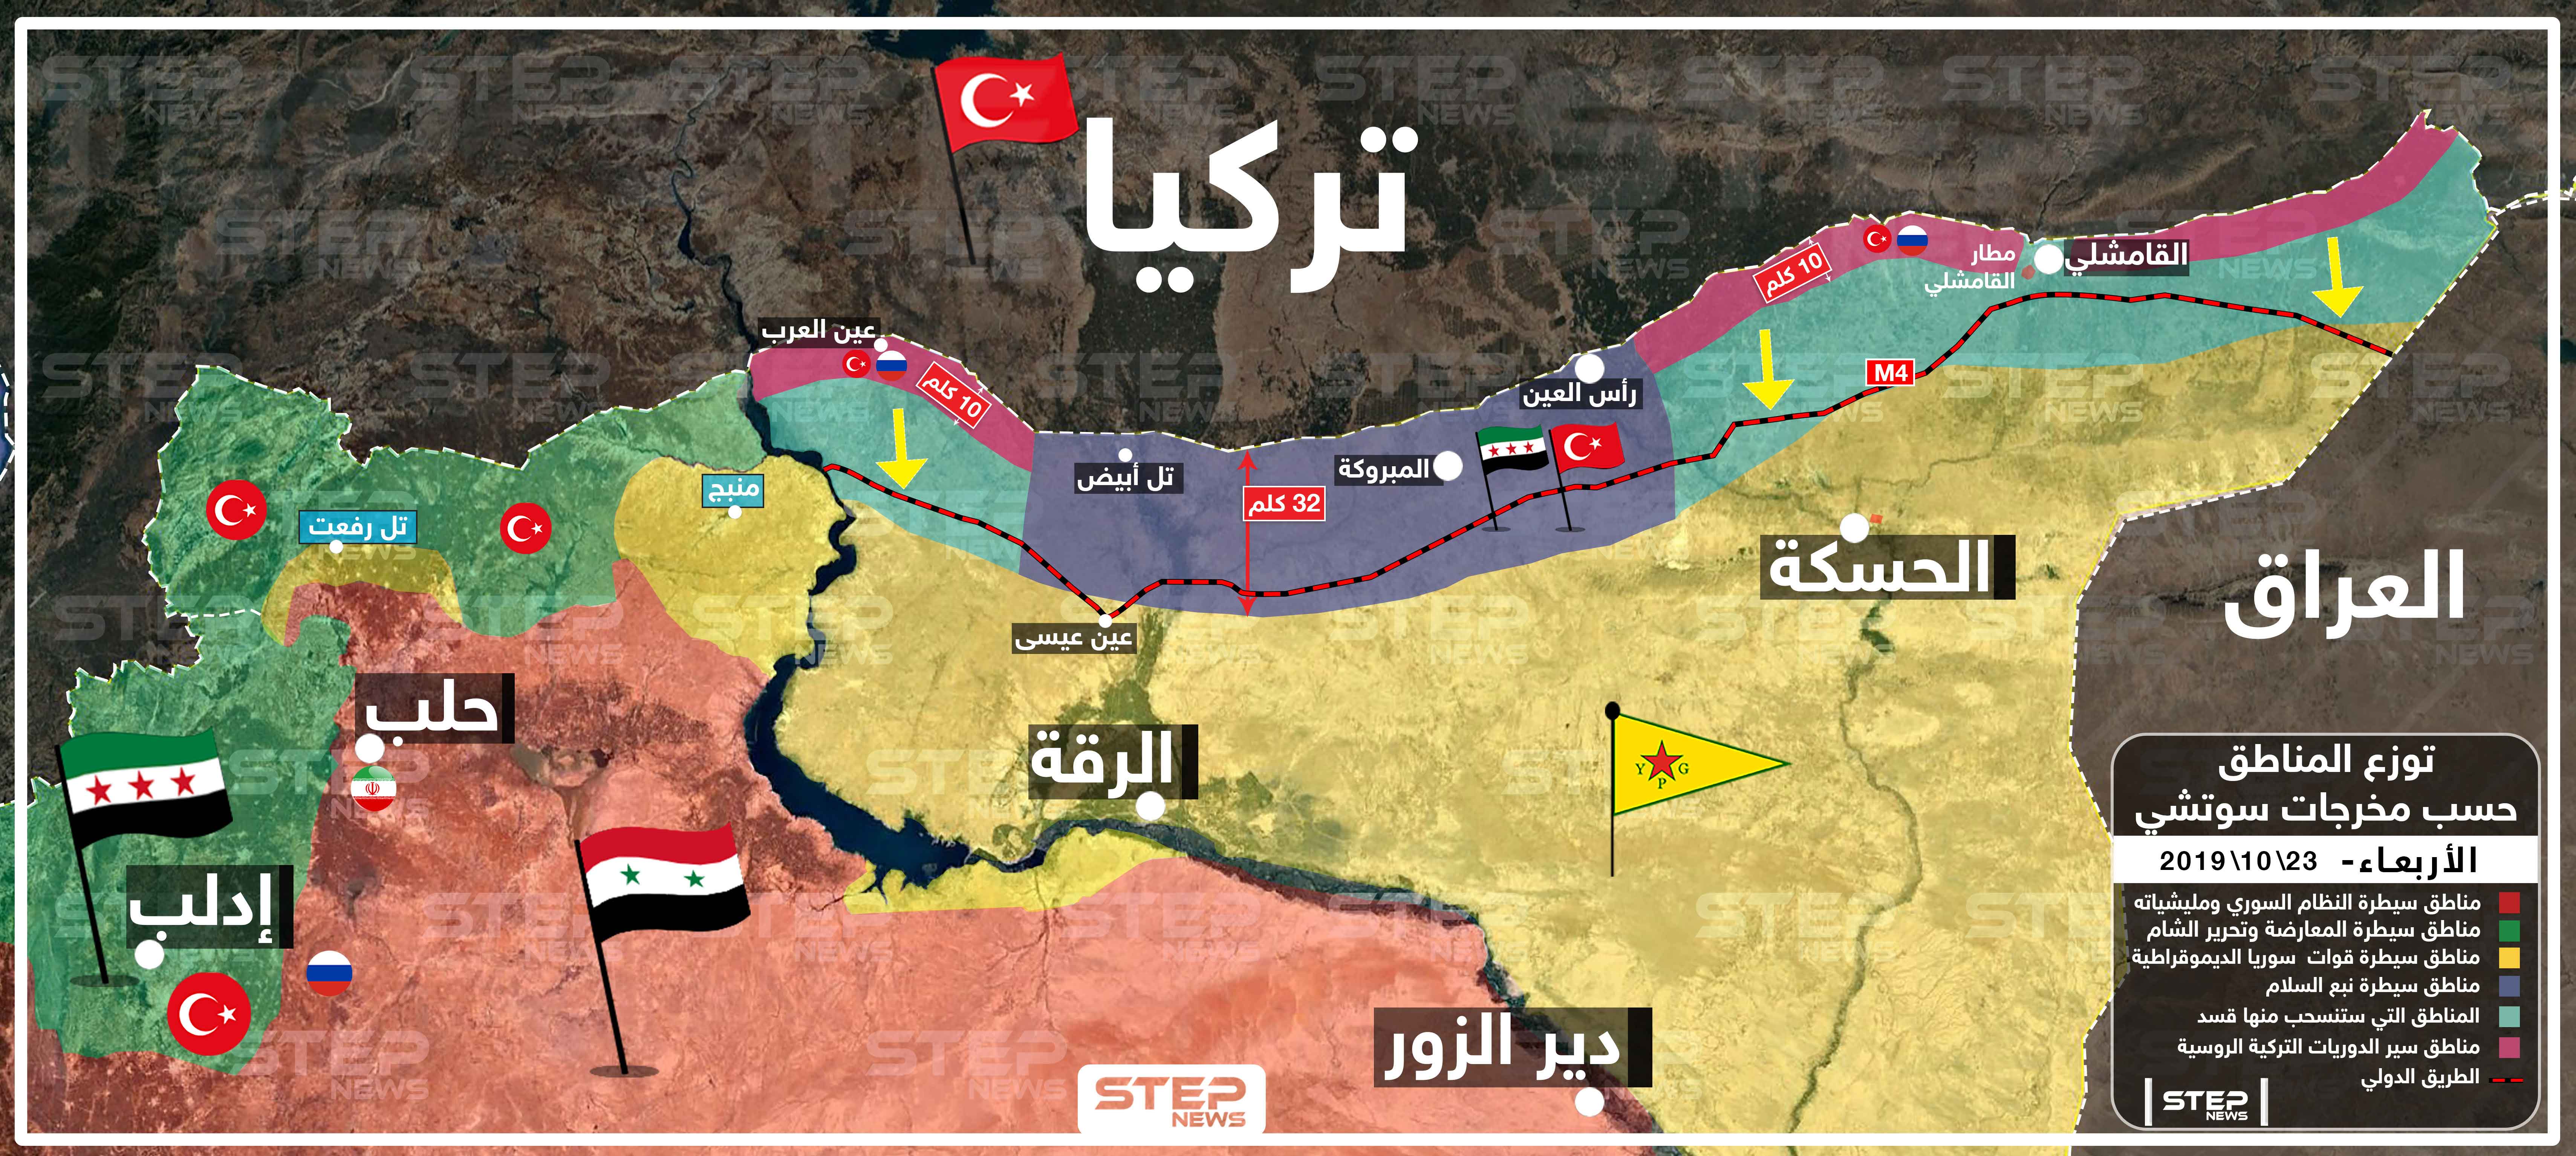 خريطة تُظهر توزع النفوذ والسيطرة شمال وشرق سوريا 23-11-2019